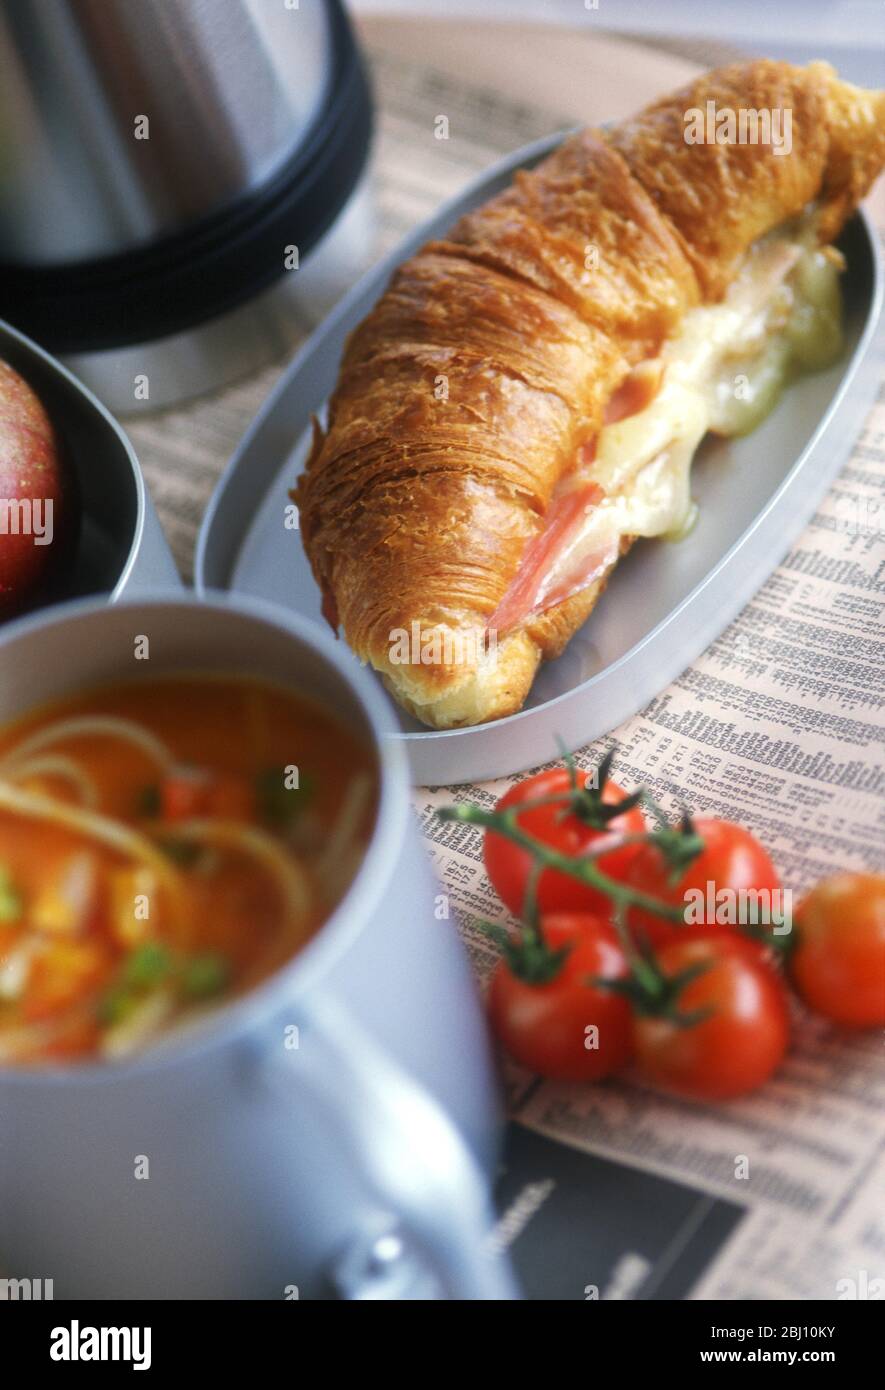 Almuerzo con croissant relleno de queso y jamón con sopa de tomate Foto de stock